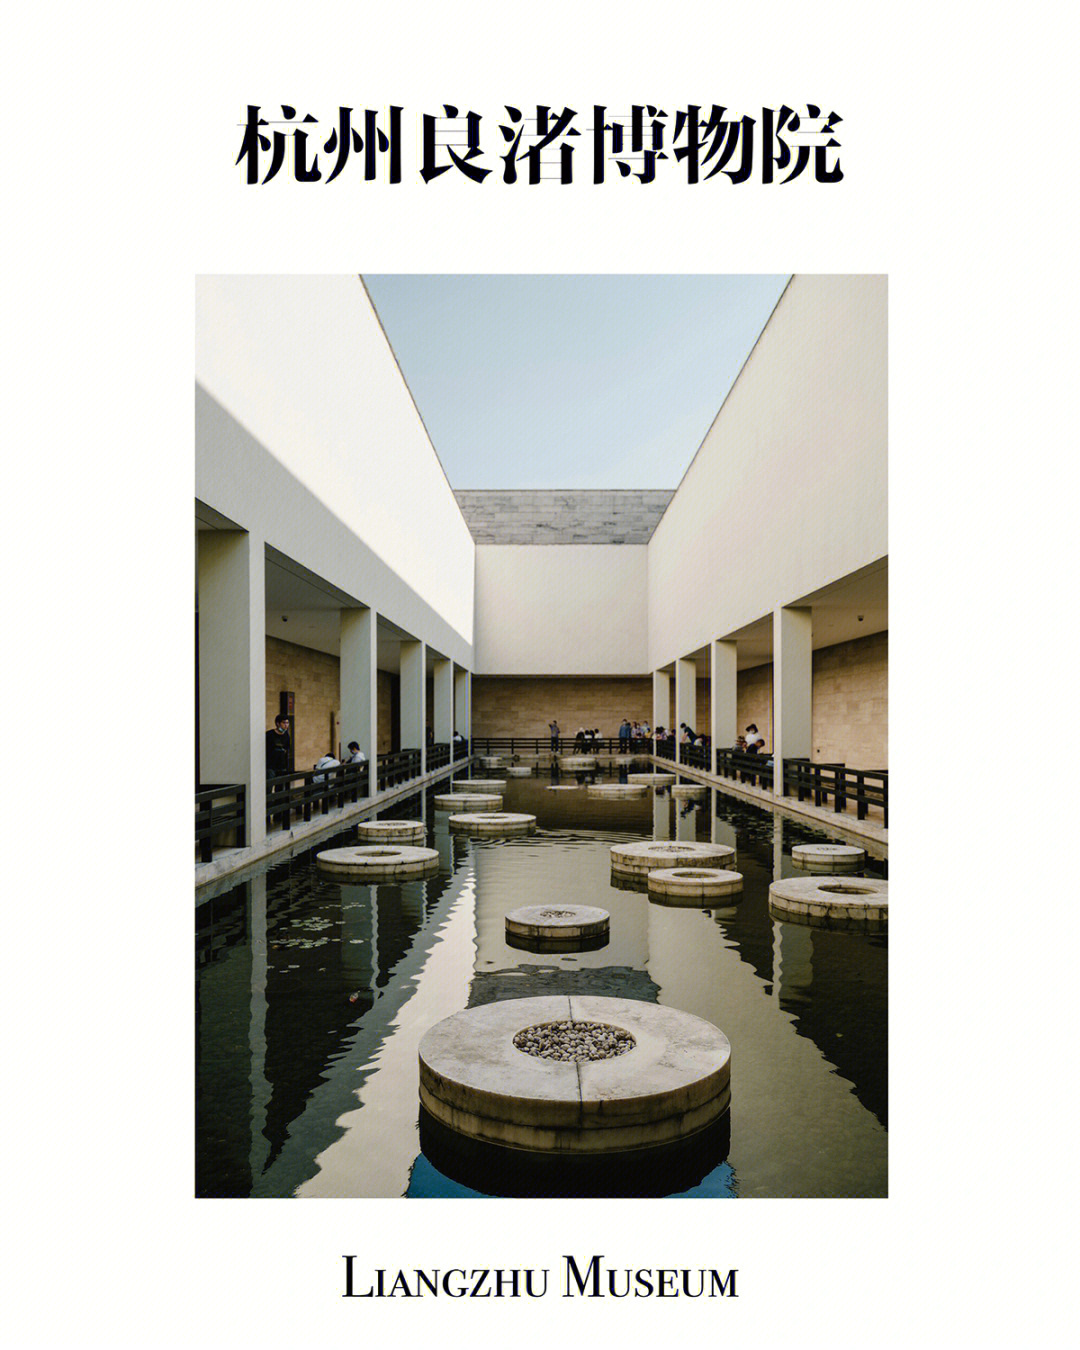 杭州良渚博物馆5000年中华文明史由此正名